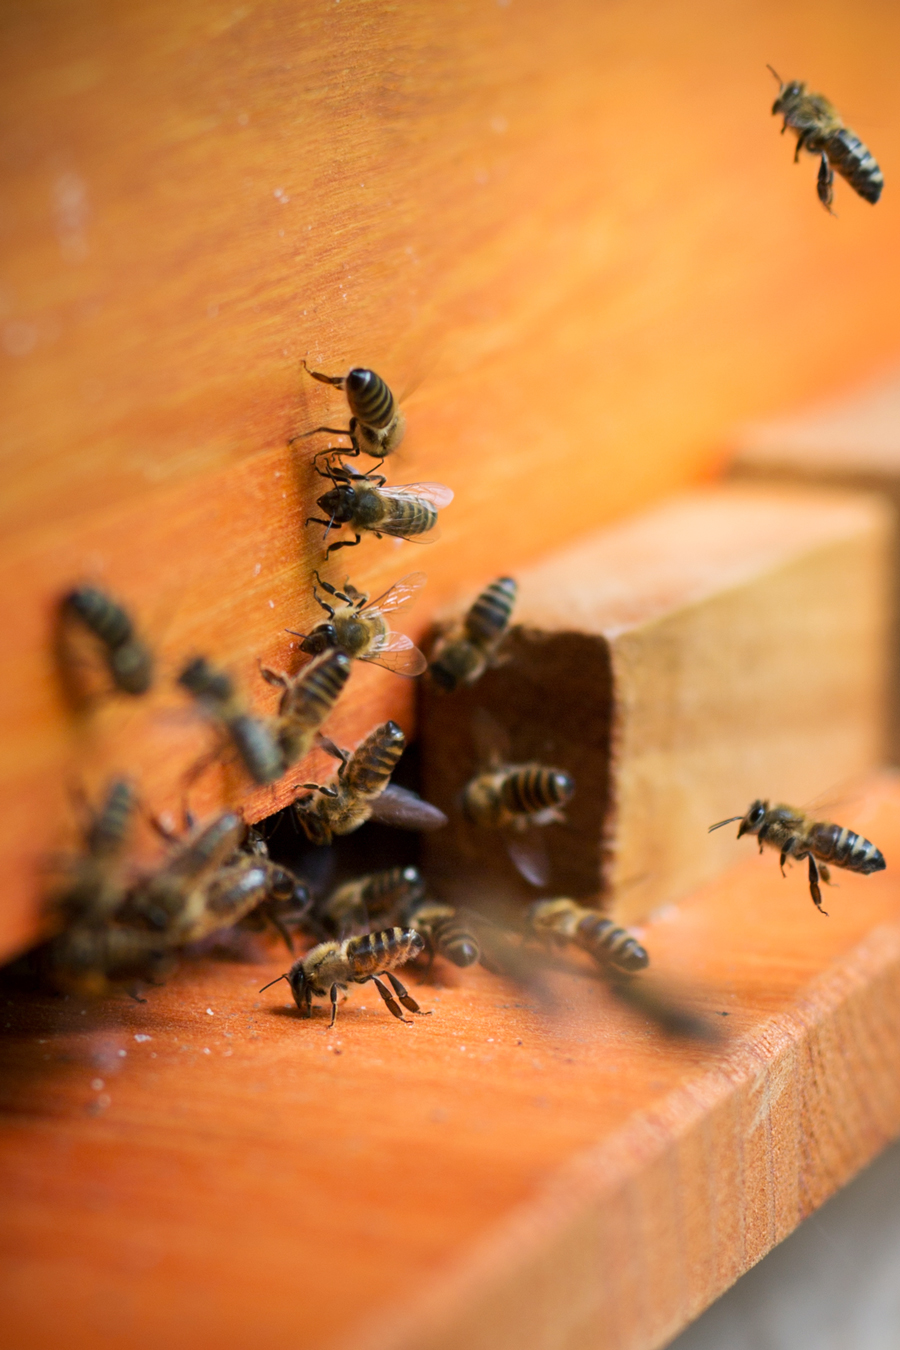 Bienenkiste, Mellifera, wesensgetreue Bienenhaltung,